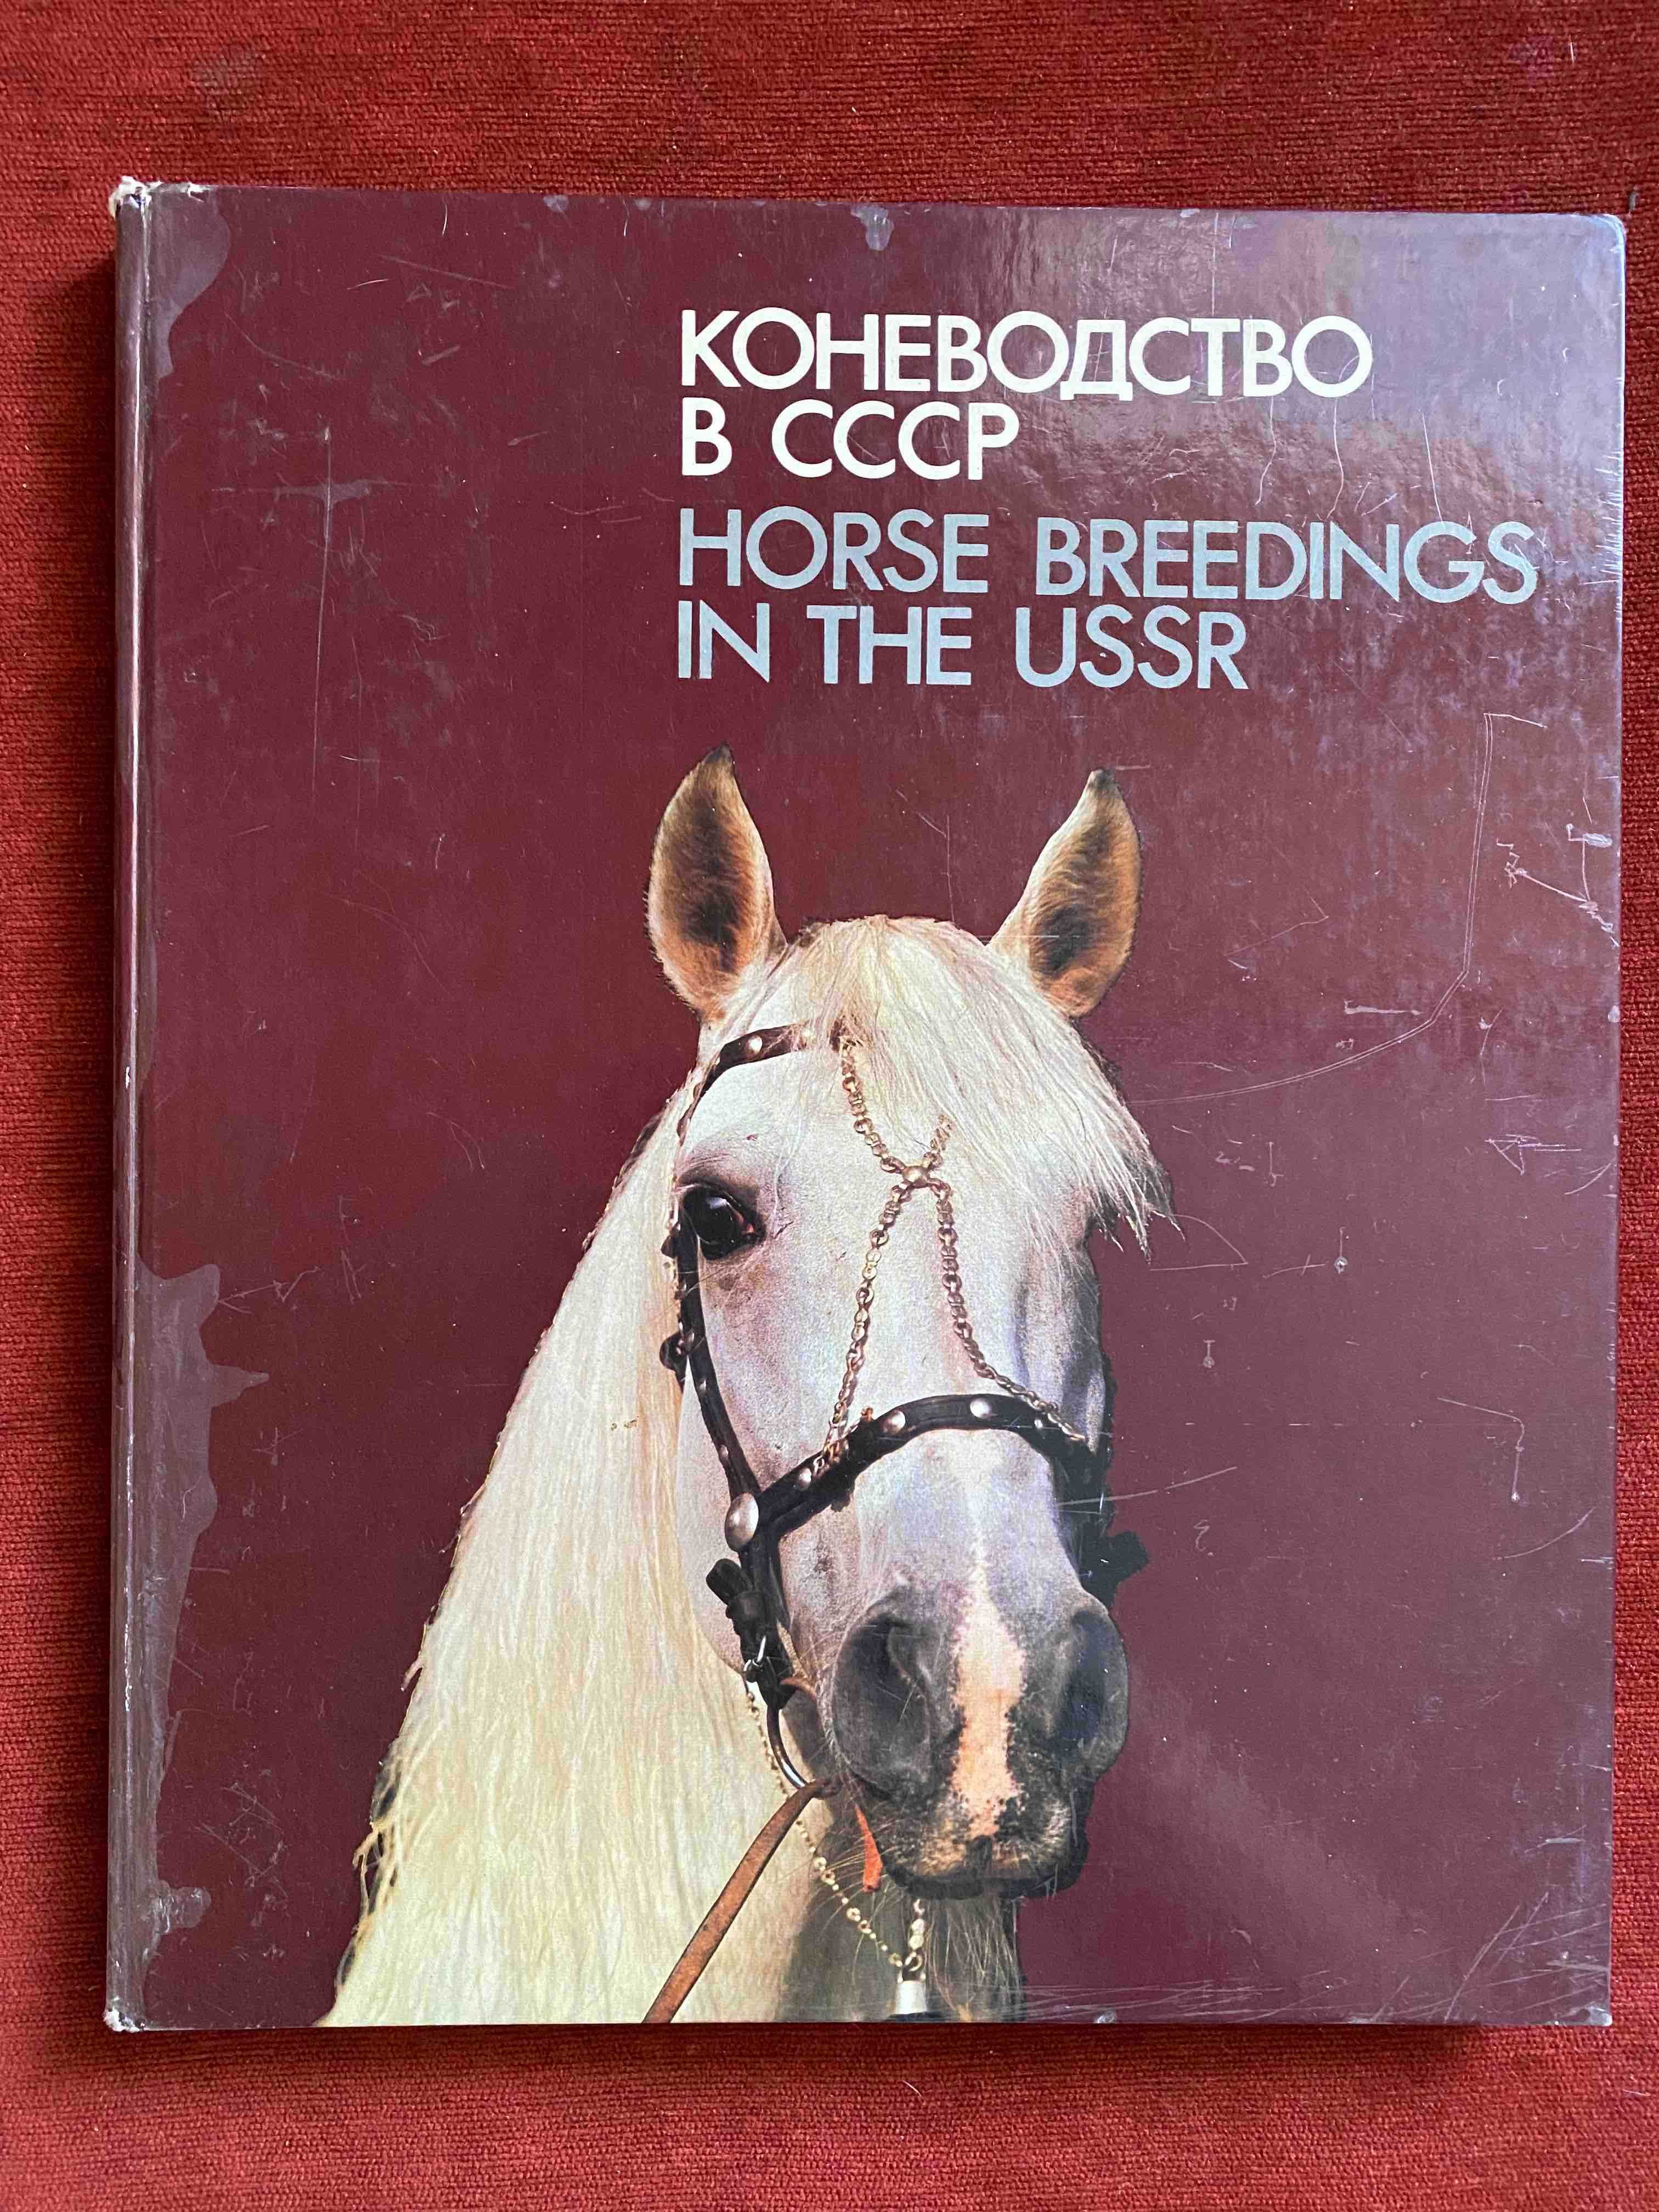 Книги альбоми про коней часів срср